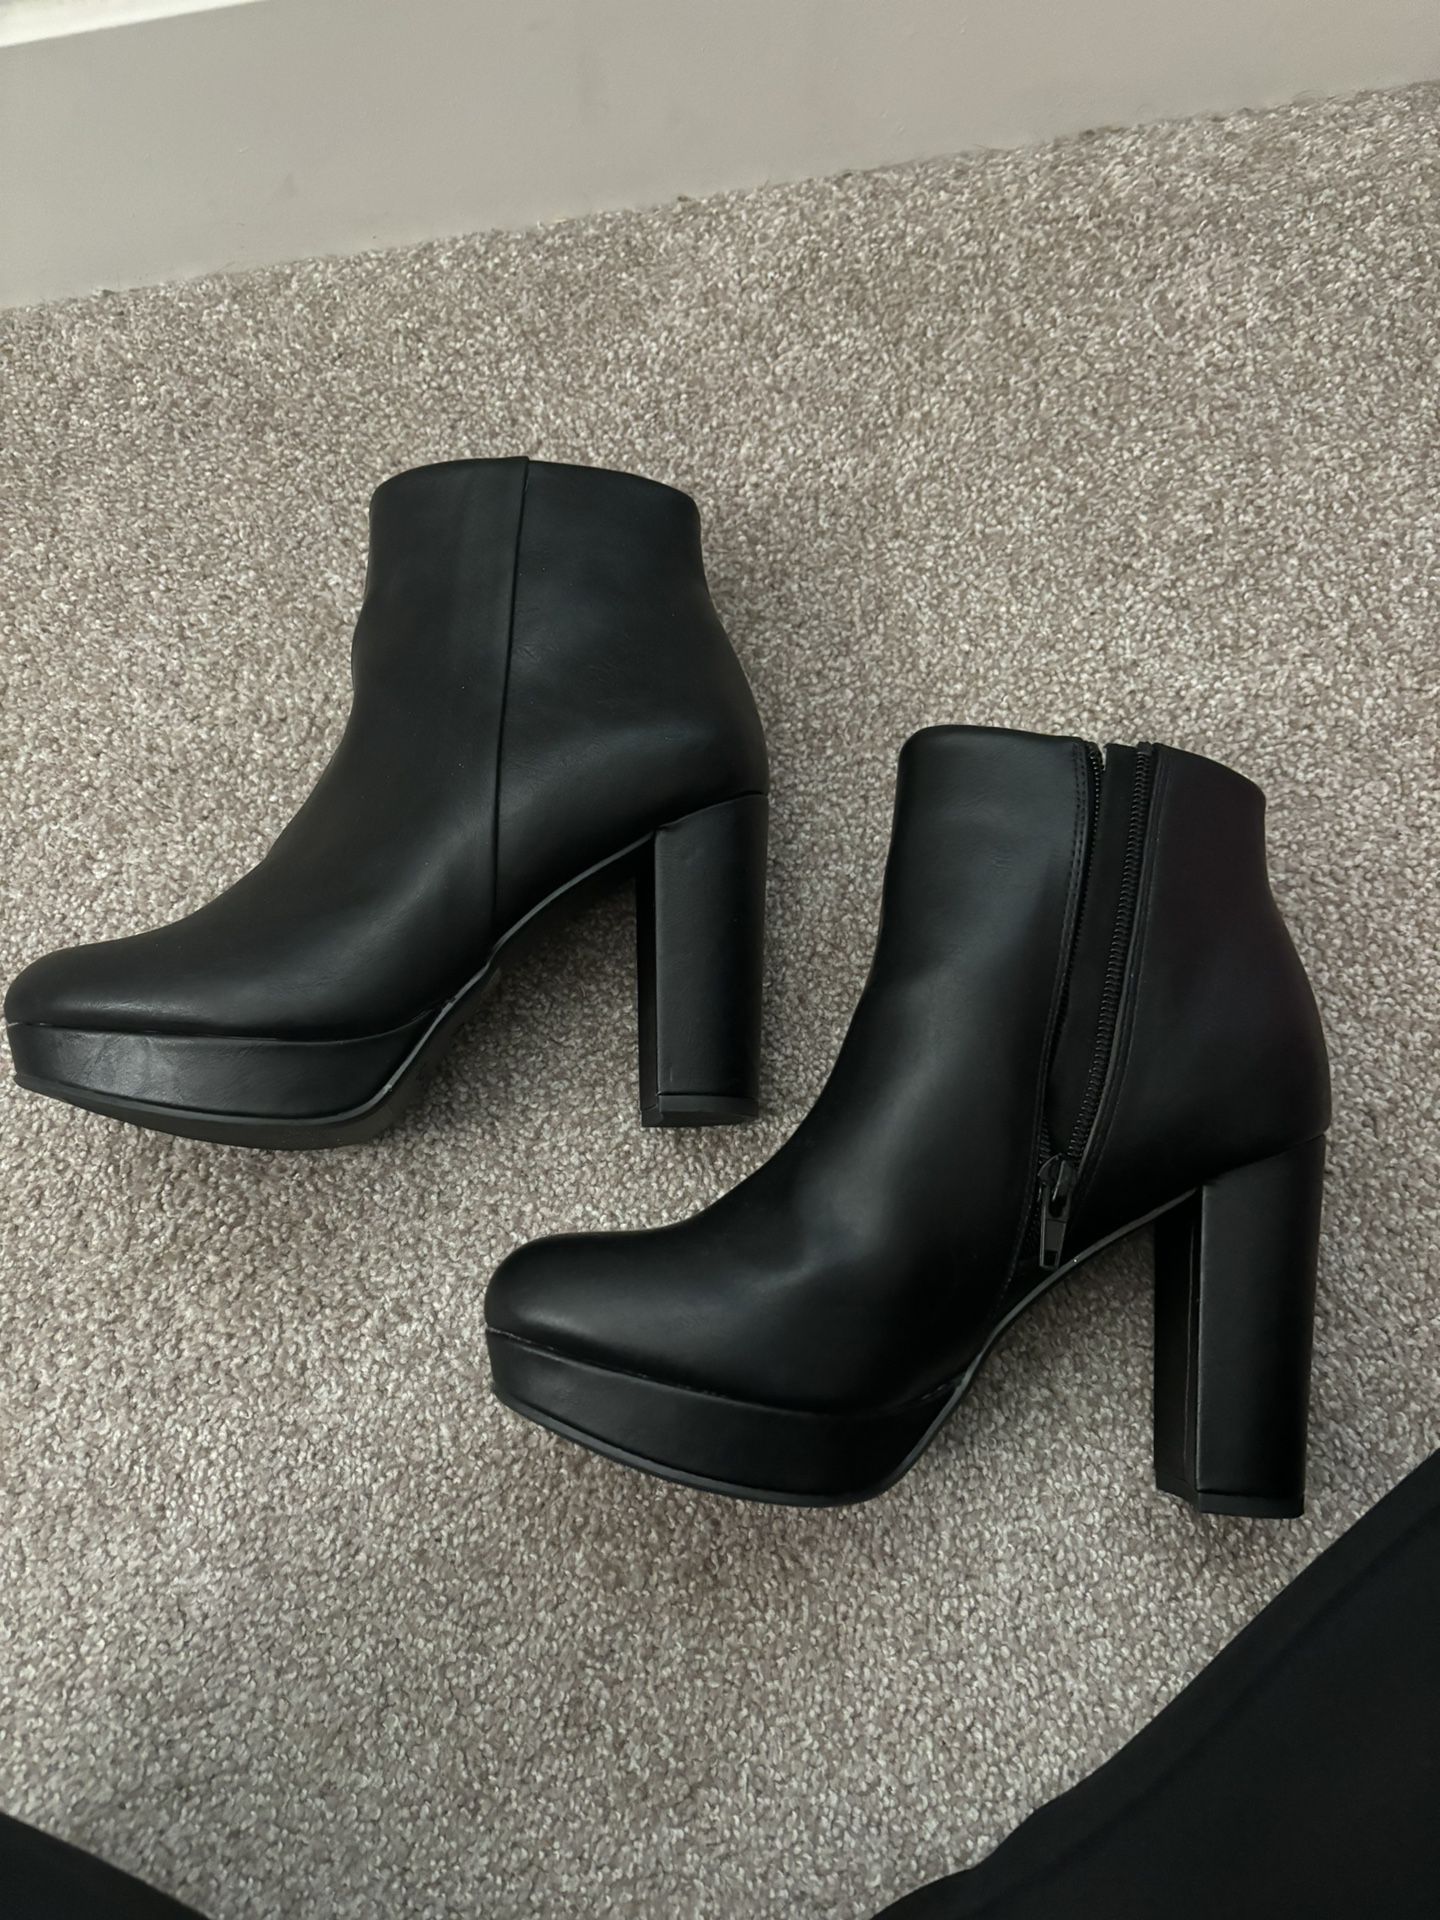  Black Heel Boots 